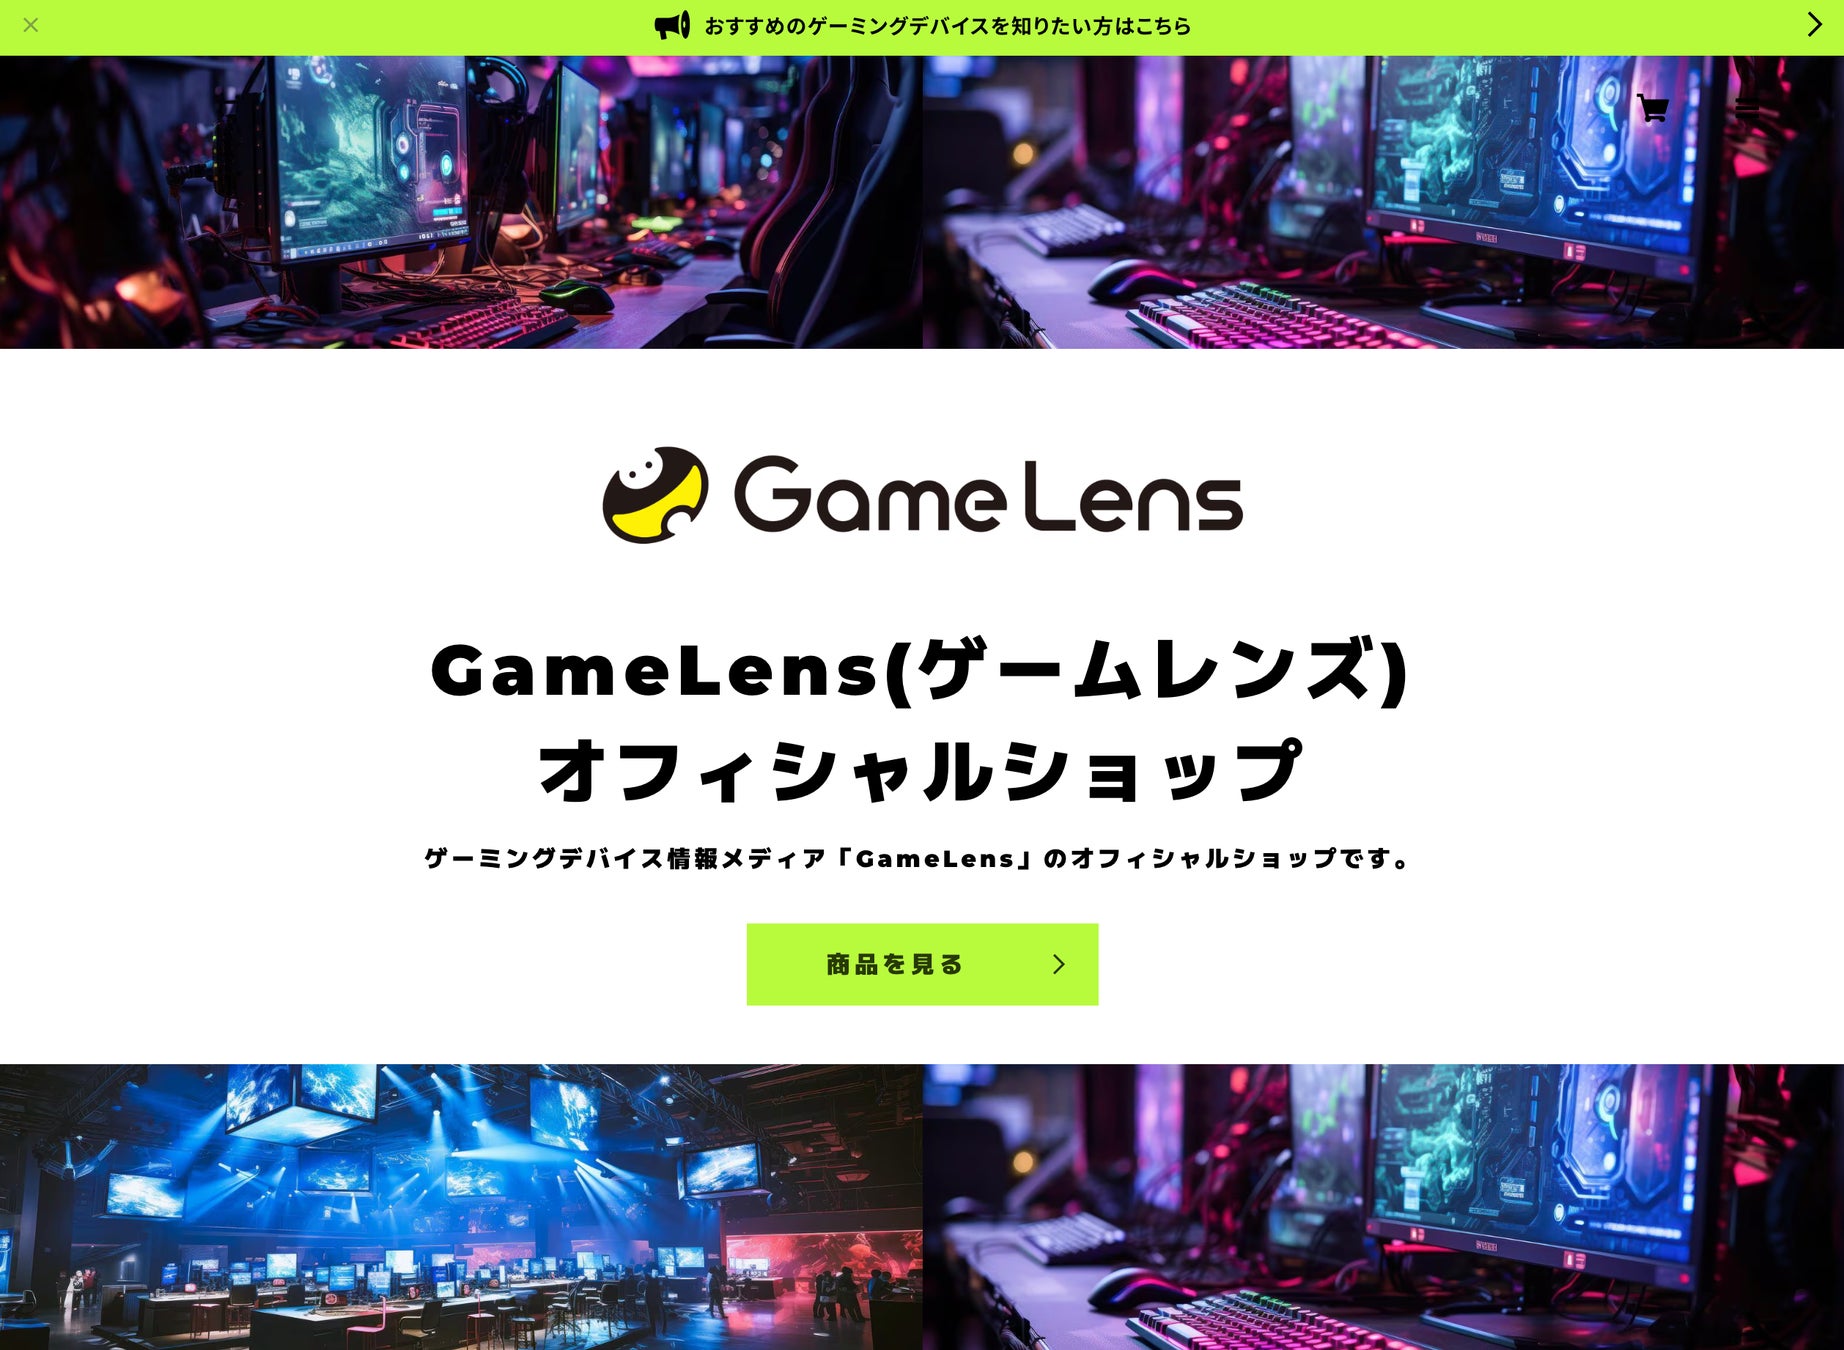 「GameLens(ゲームレンズ)」がオフィシャルショップを開設